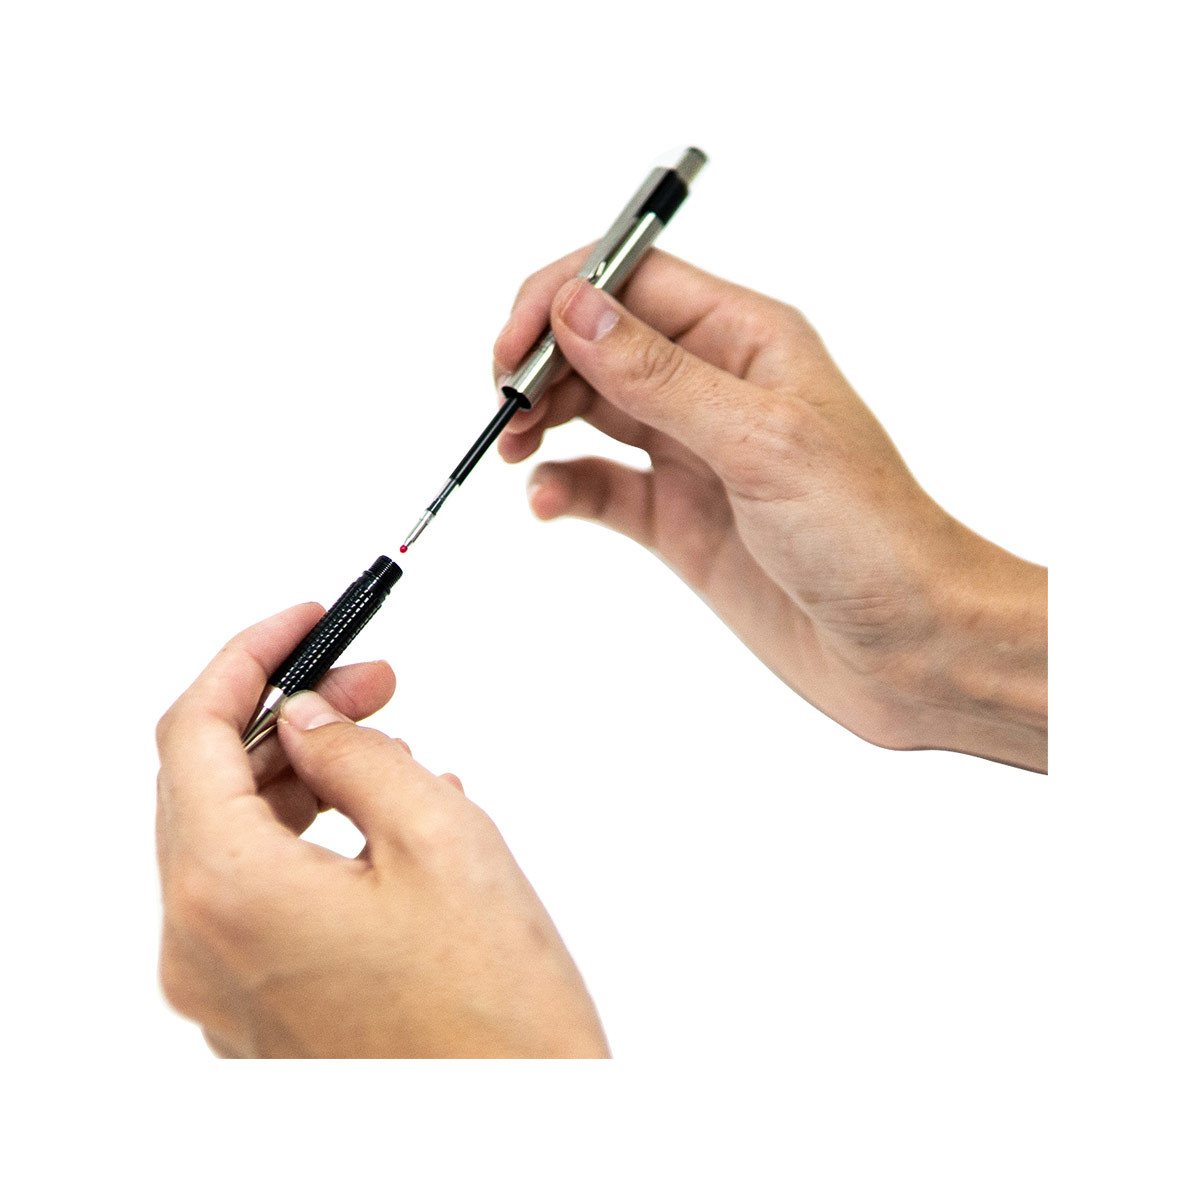 F-301 Stainless Steel Ballpoint Pen, 0.7mm Black, 1 Pack